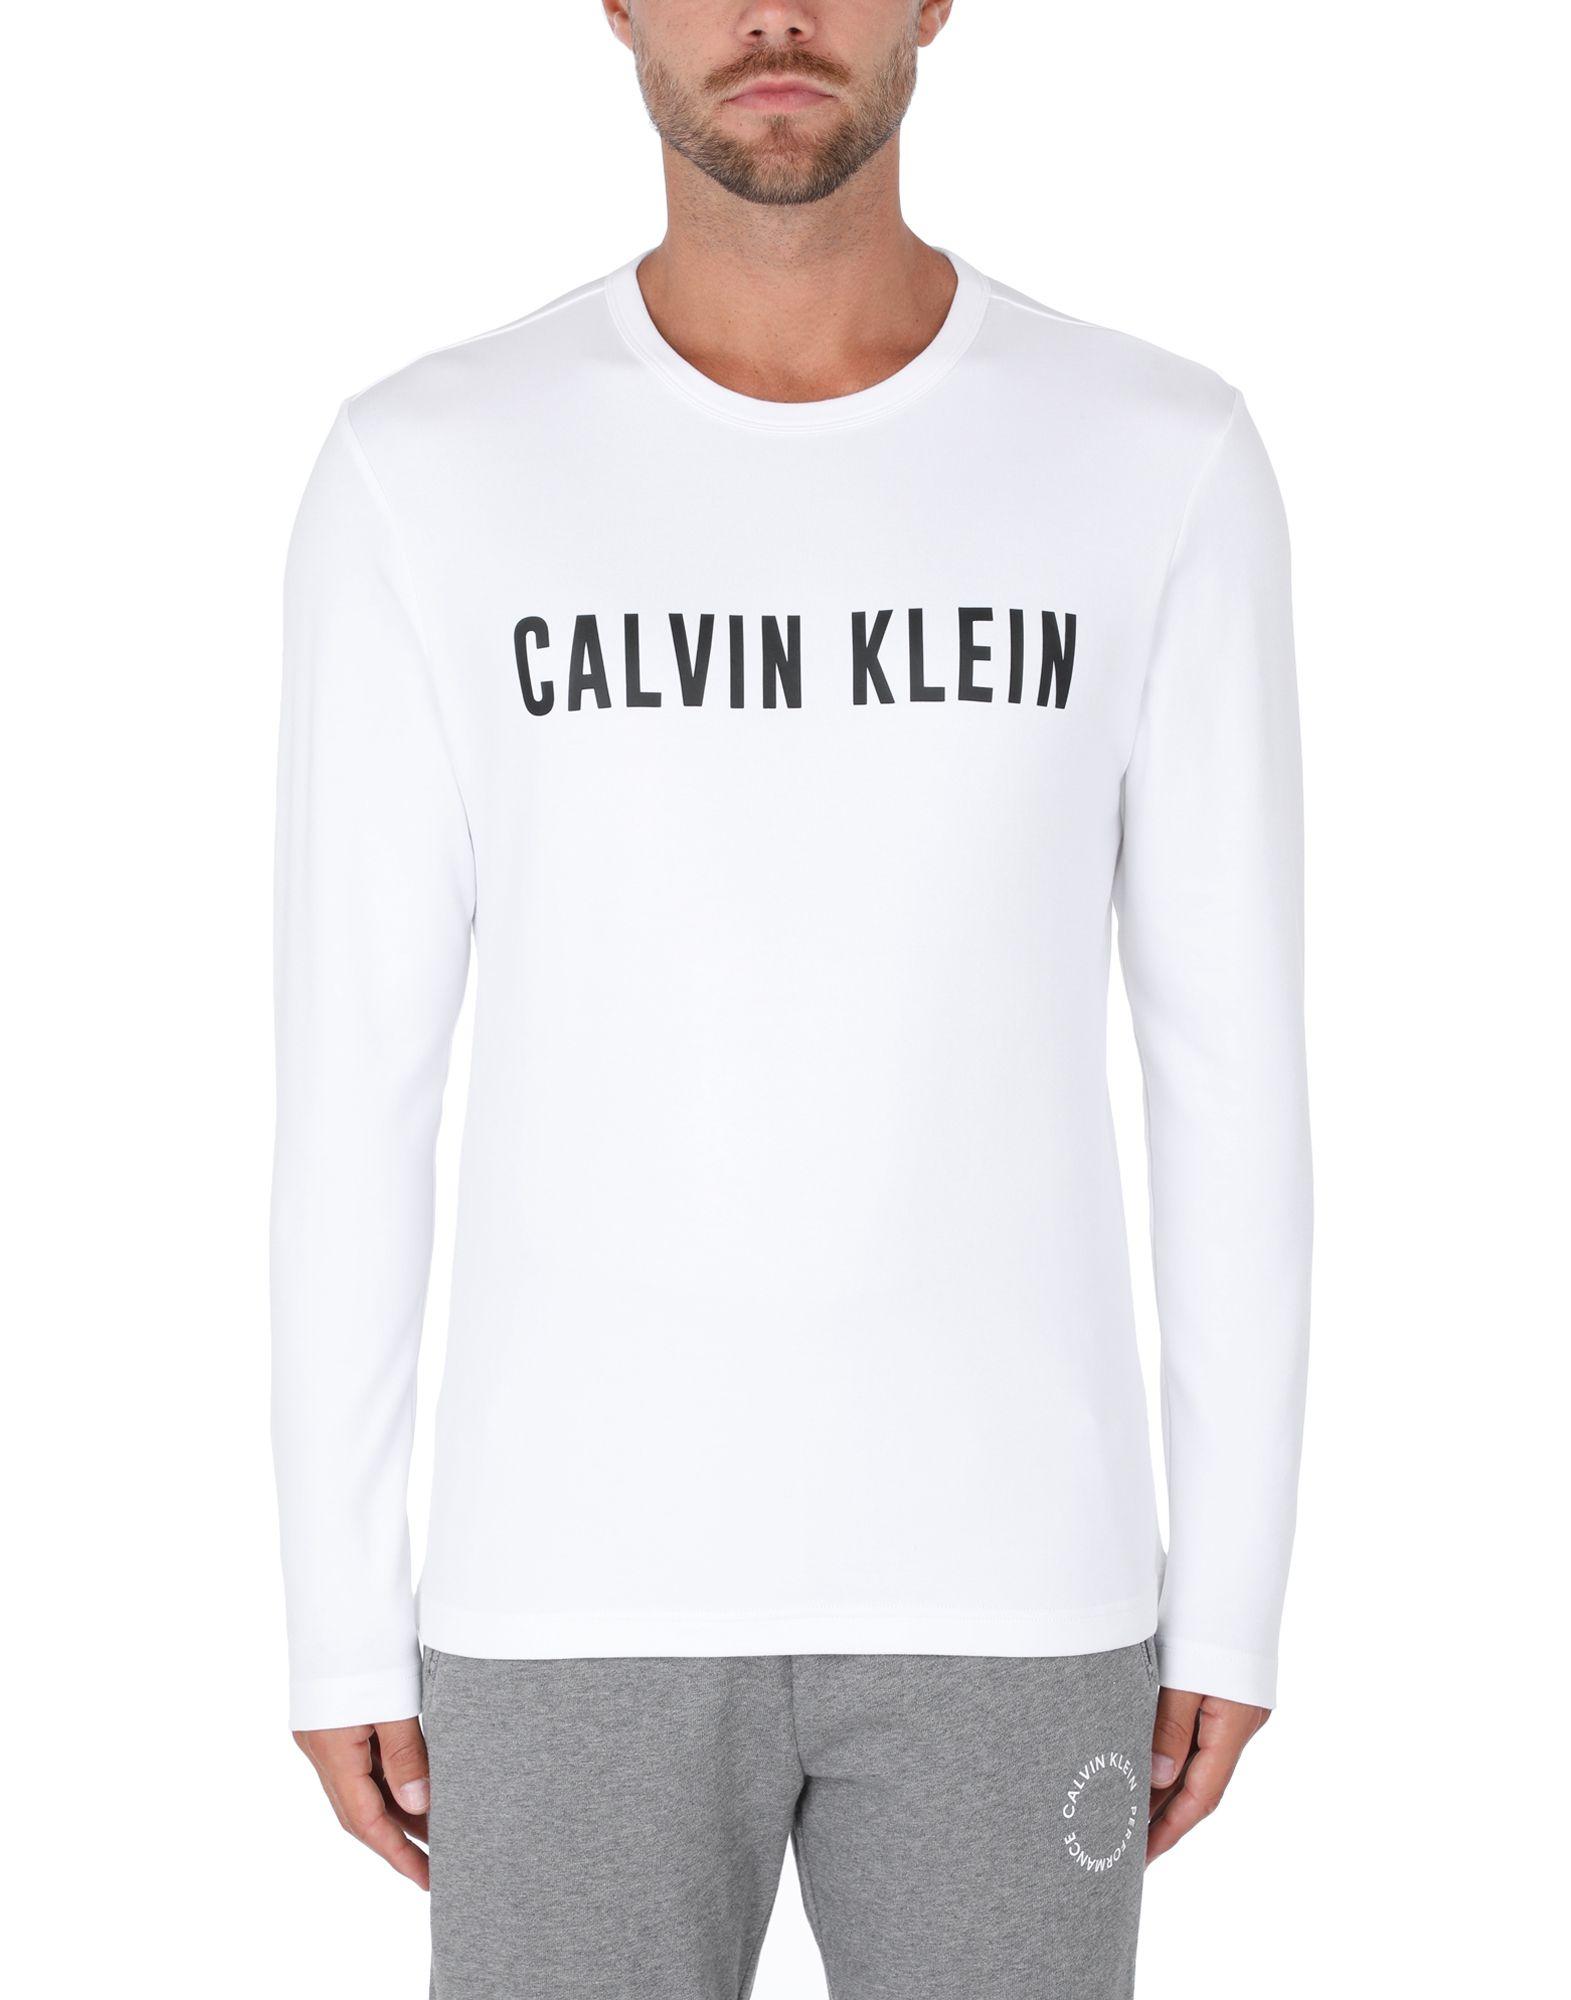 Calvin Klein Cotton T-shirt in White for Men - Lyst